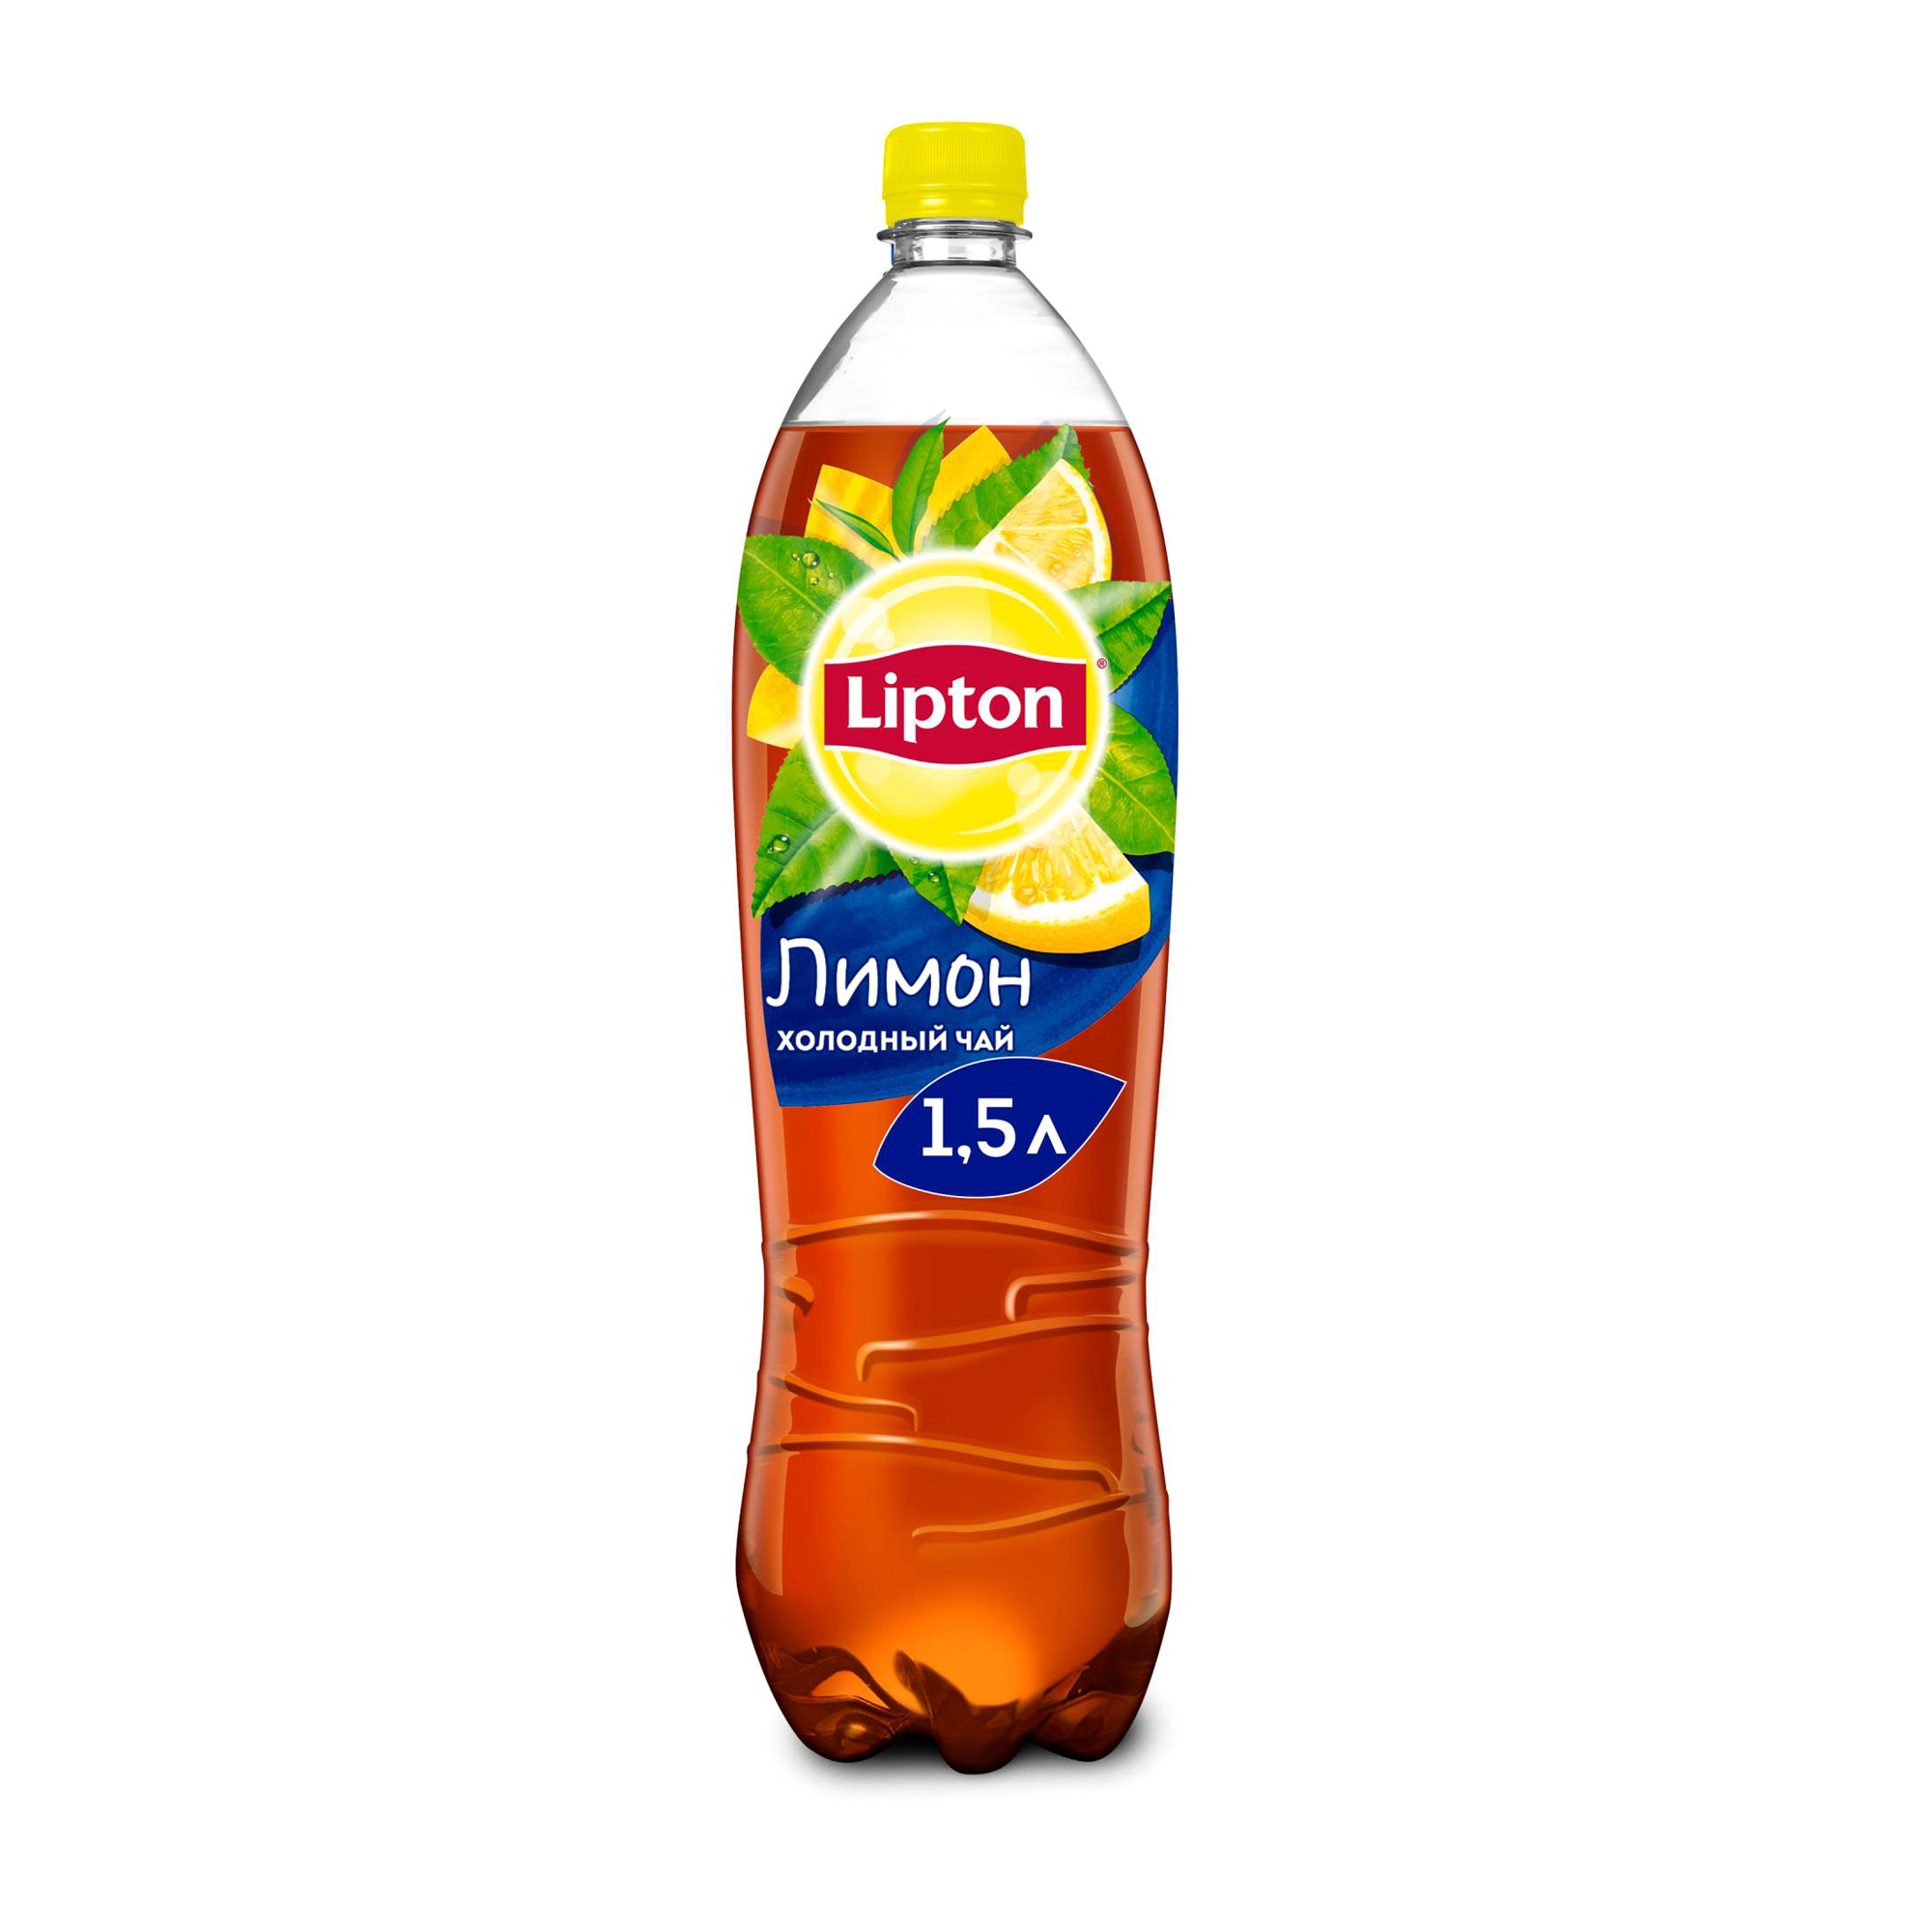 Холодный чай Lipton Черный Лимон 1,5 л холодный чай lipton липтон лесные ягоды 1 литр пэт 12 шт в уп